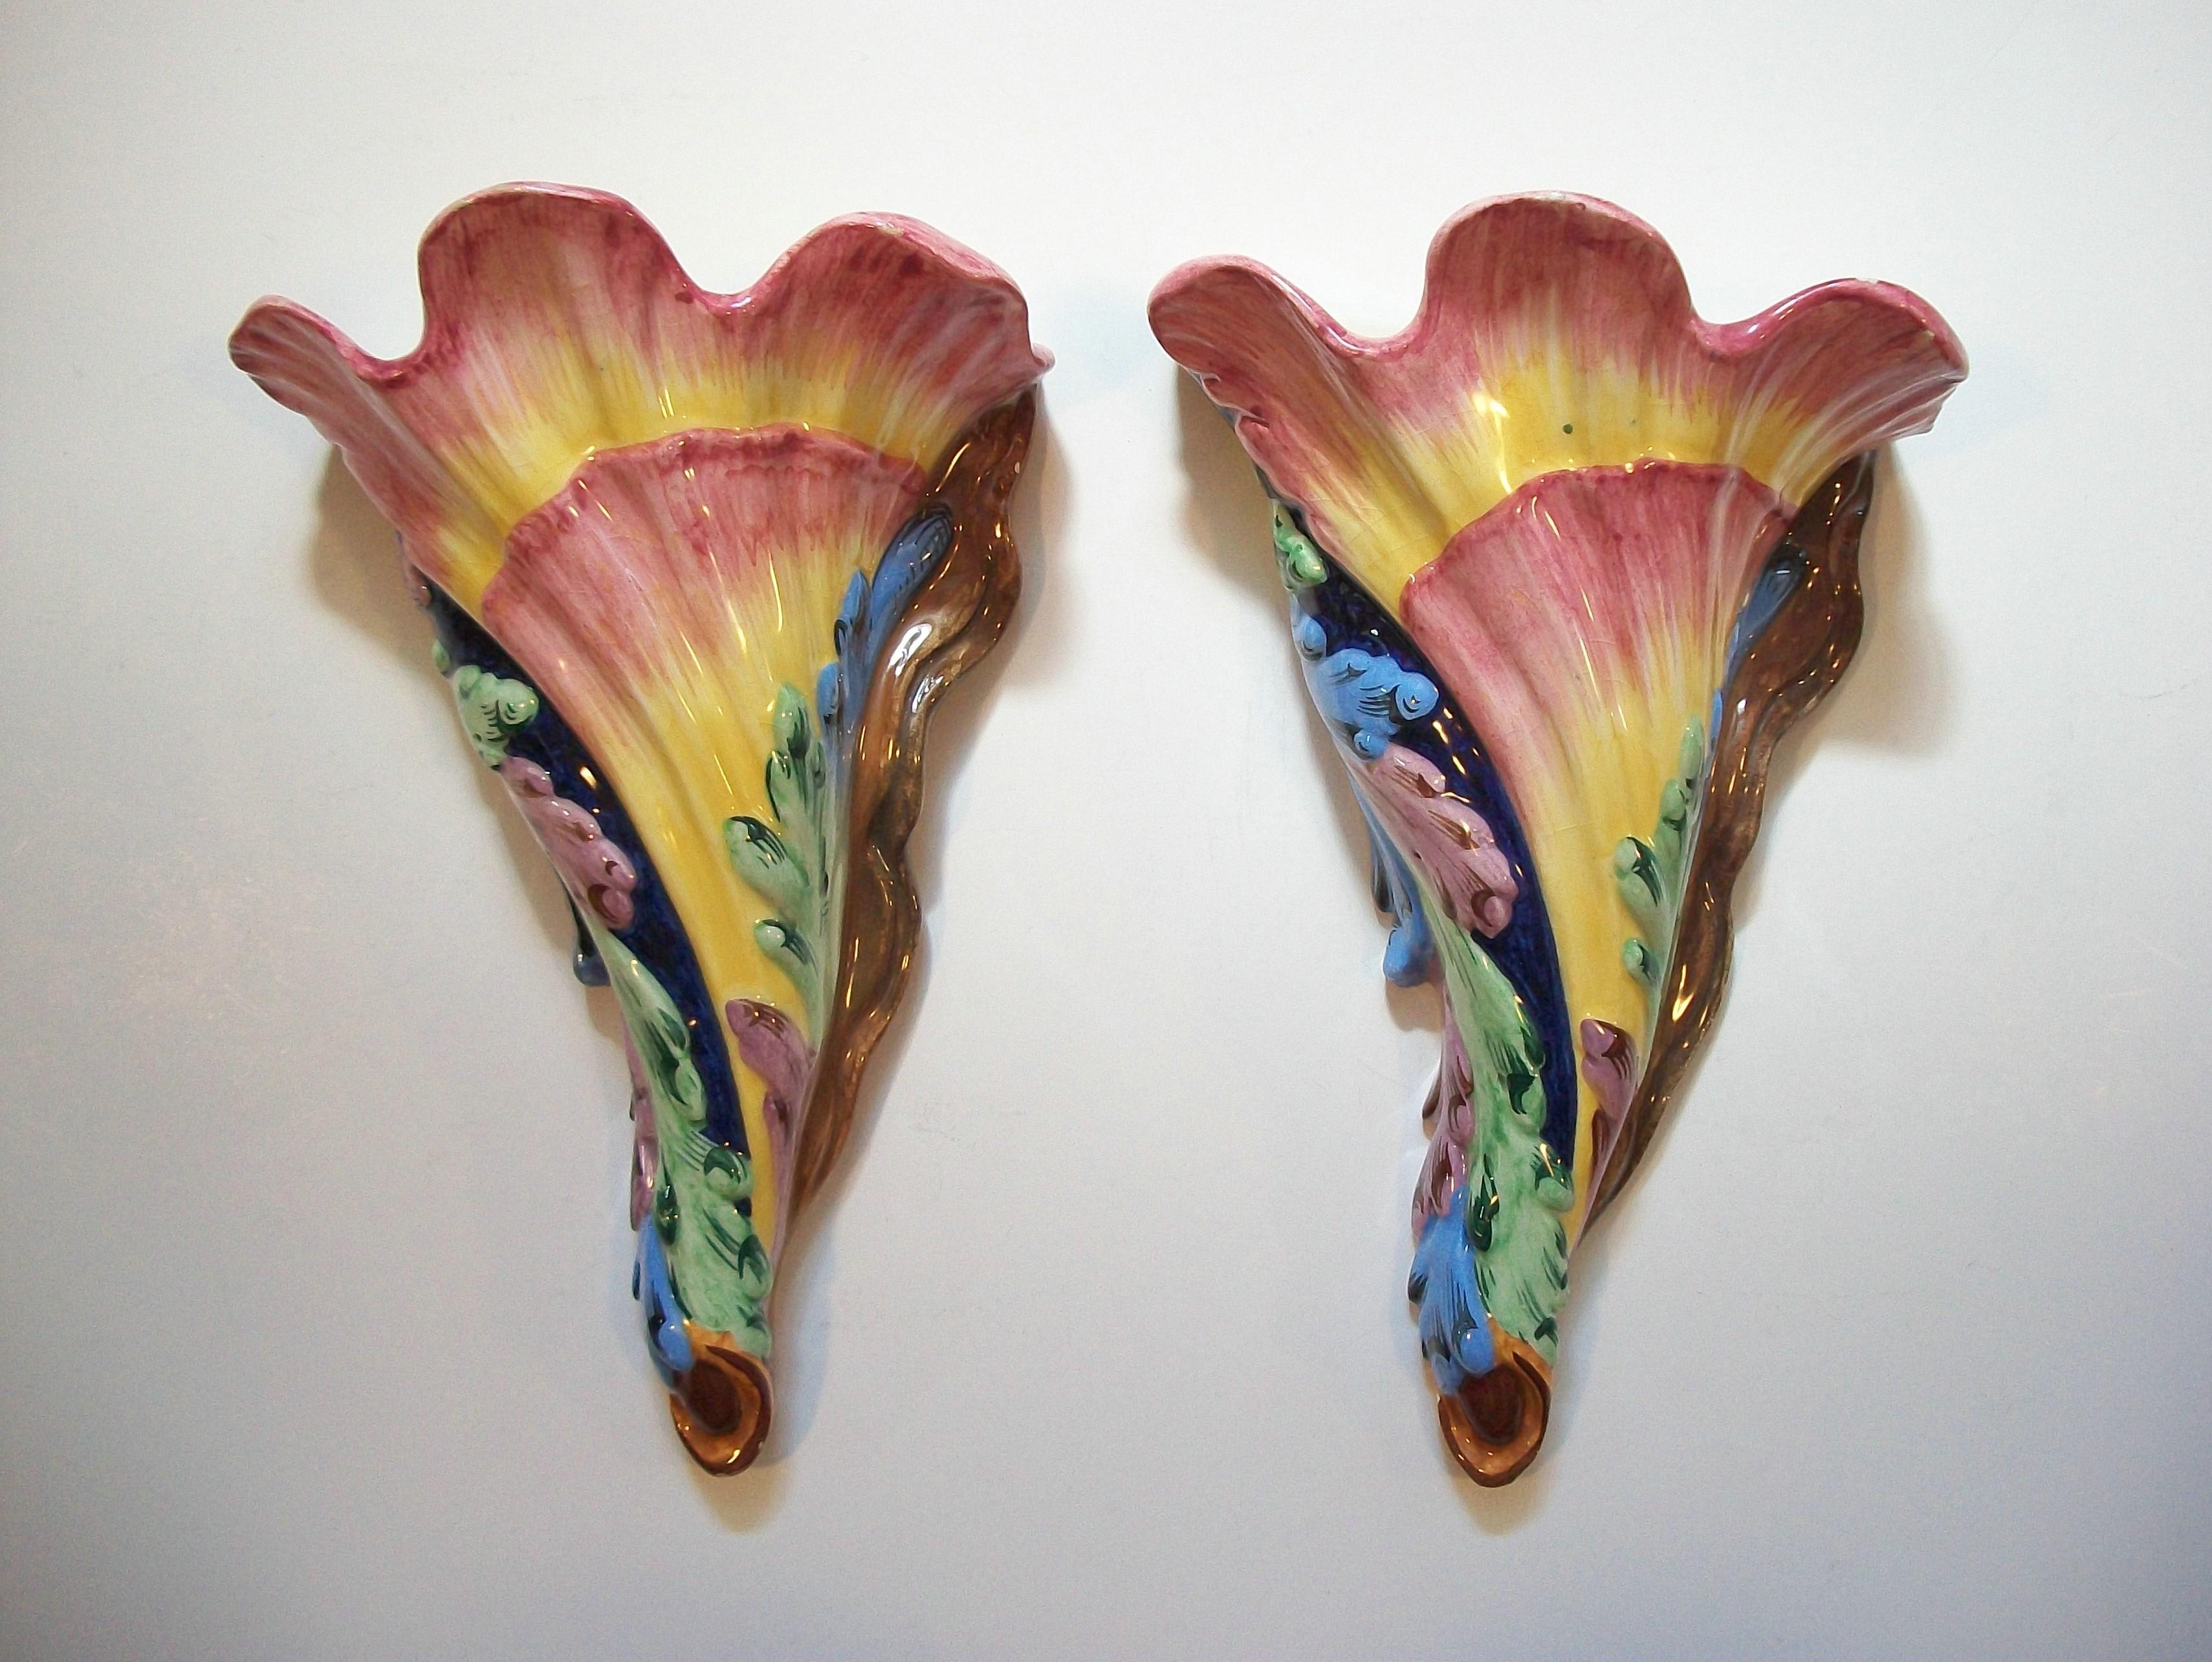 Feines Paar überschwänglicher Hollywood Regency Majolika Wandtaschen - mit bunten handgemalten Akanthusblättern vor dem trompetenförmigen Blumenkörper - die Glasur mit einem glatten glänzenden Finish - cremefarbene Glasur auf der Innenseite - die